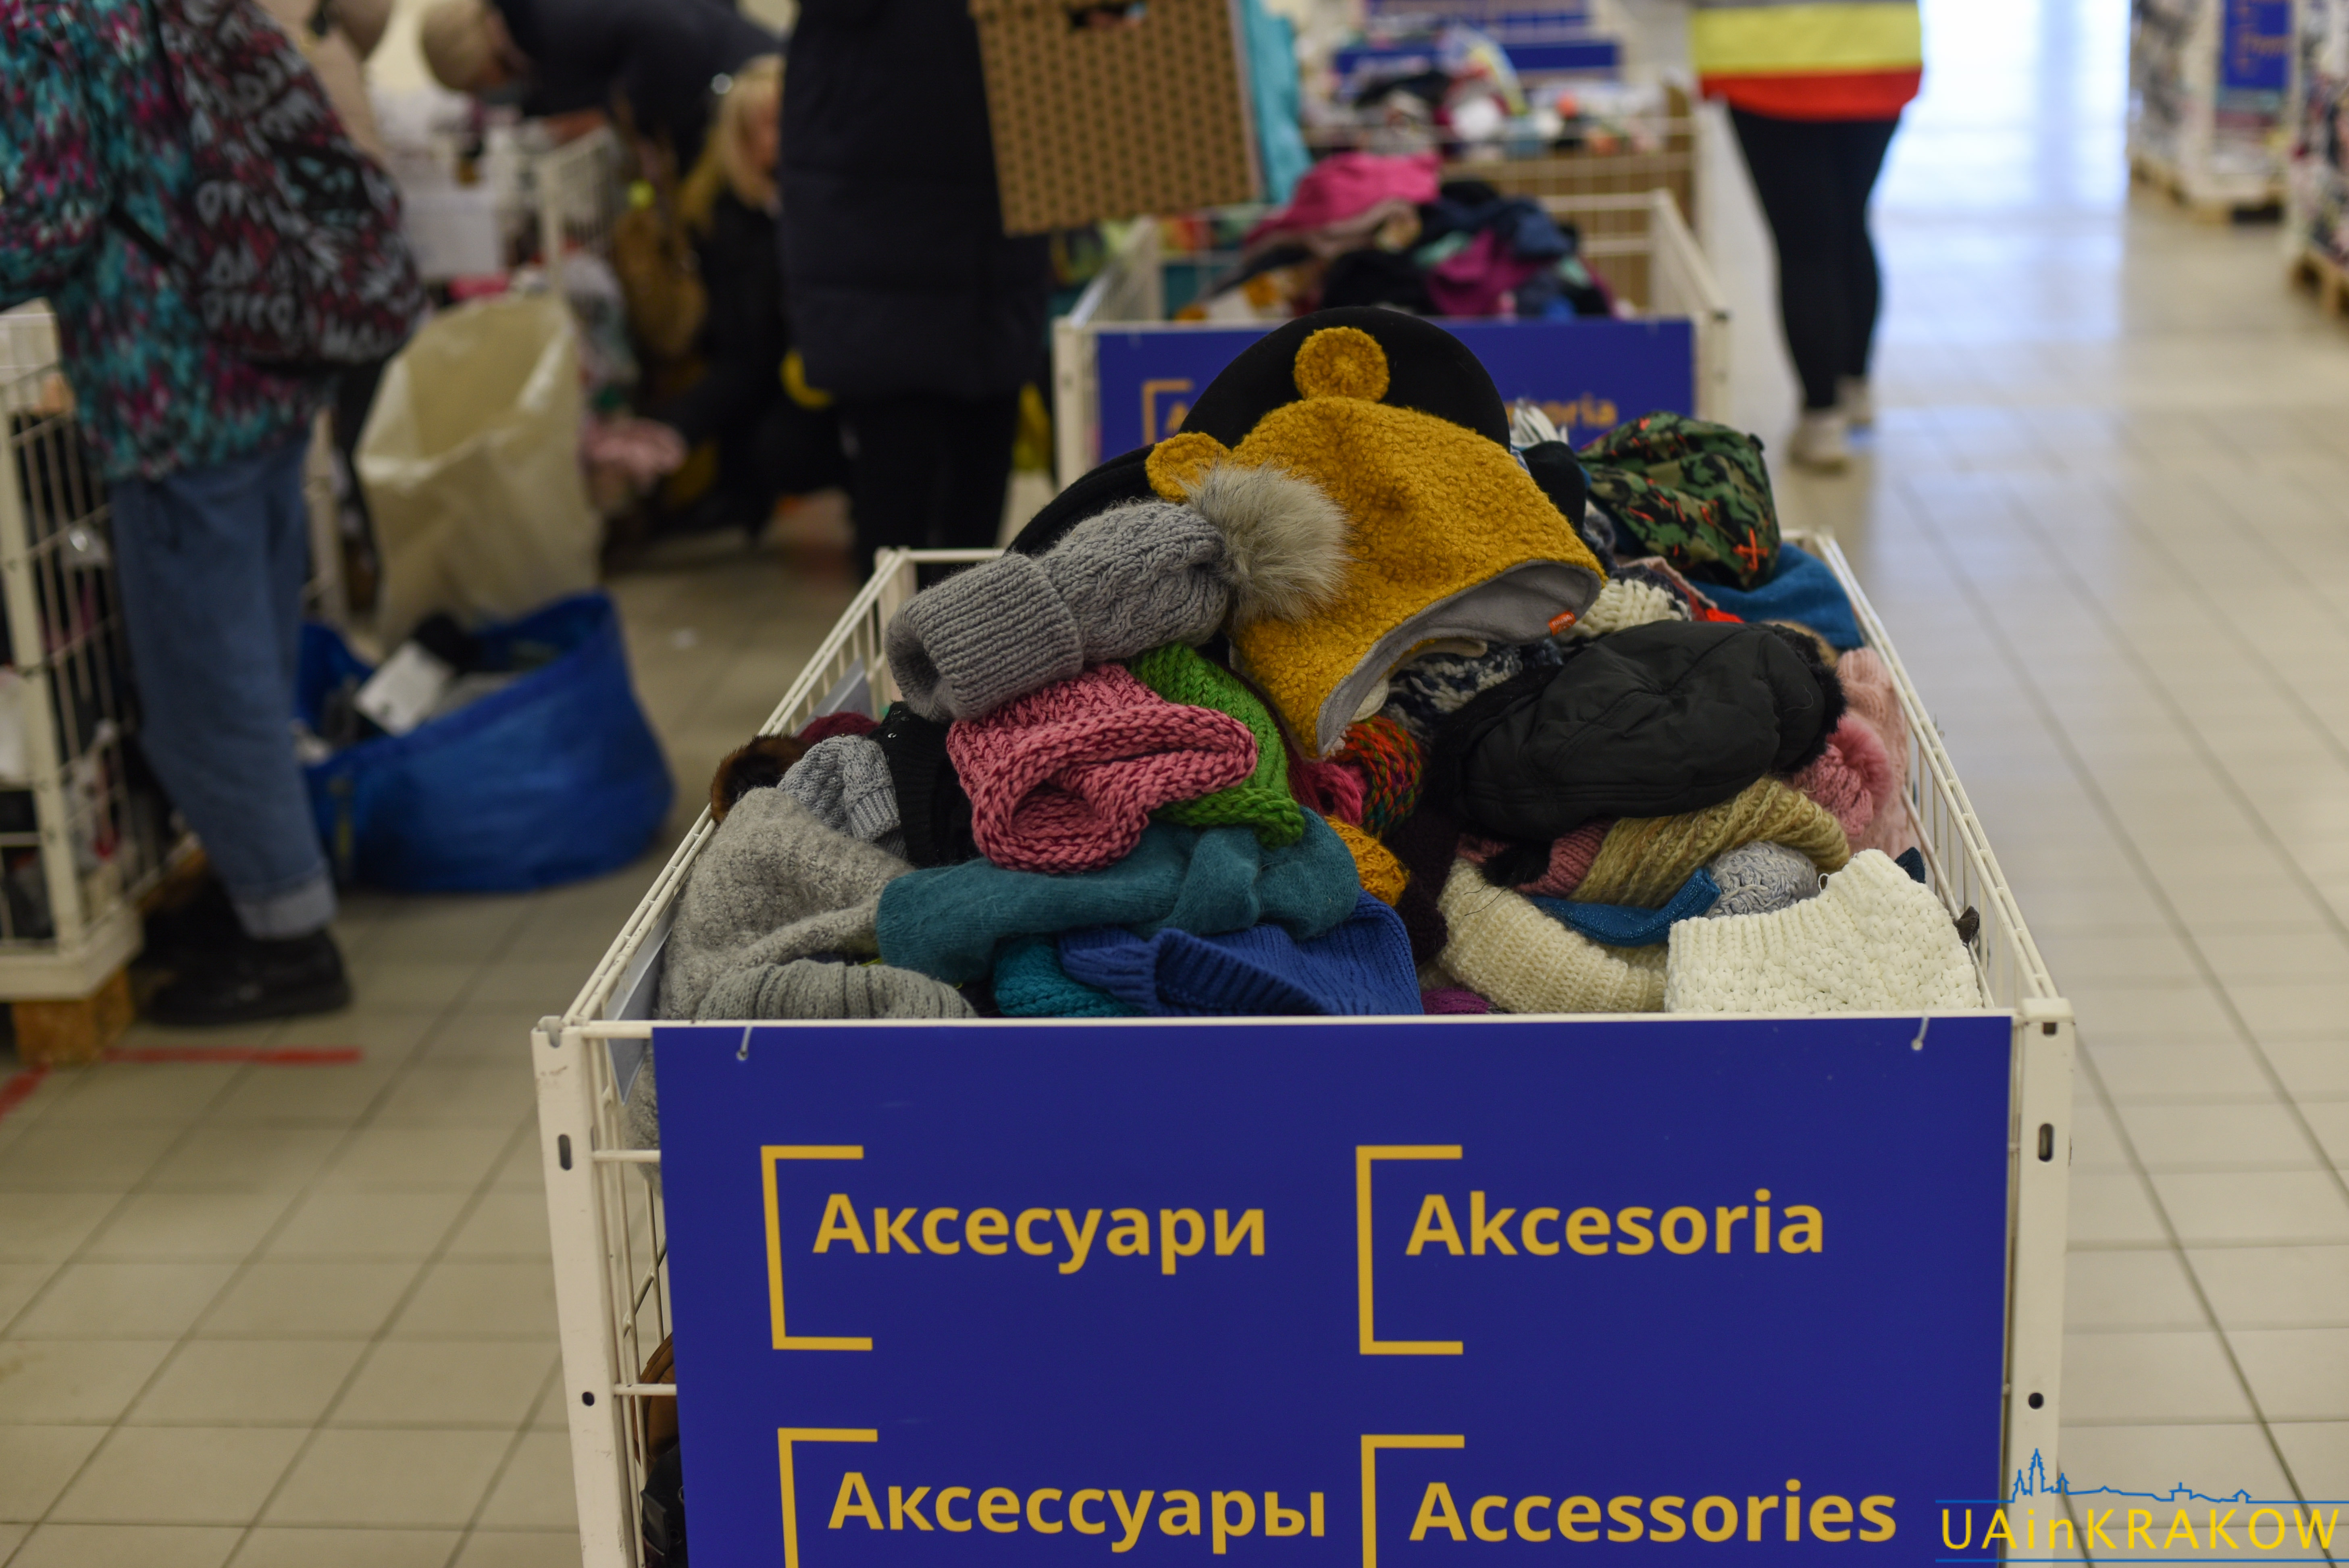 Шафа добра у ТЦ "Плаза" 一 безплатний одяг для біженців з України [ФОТО] dsc 8748